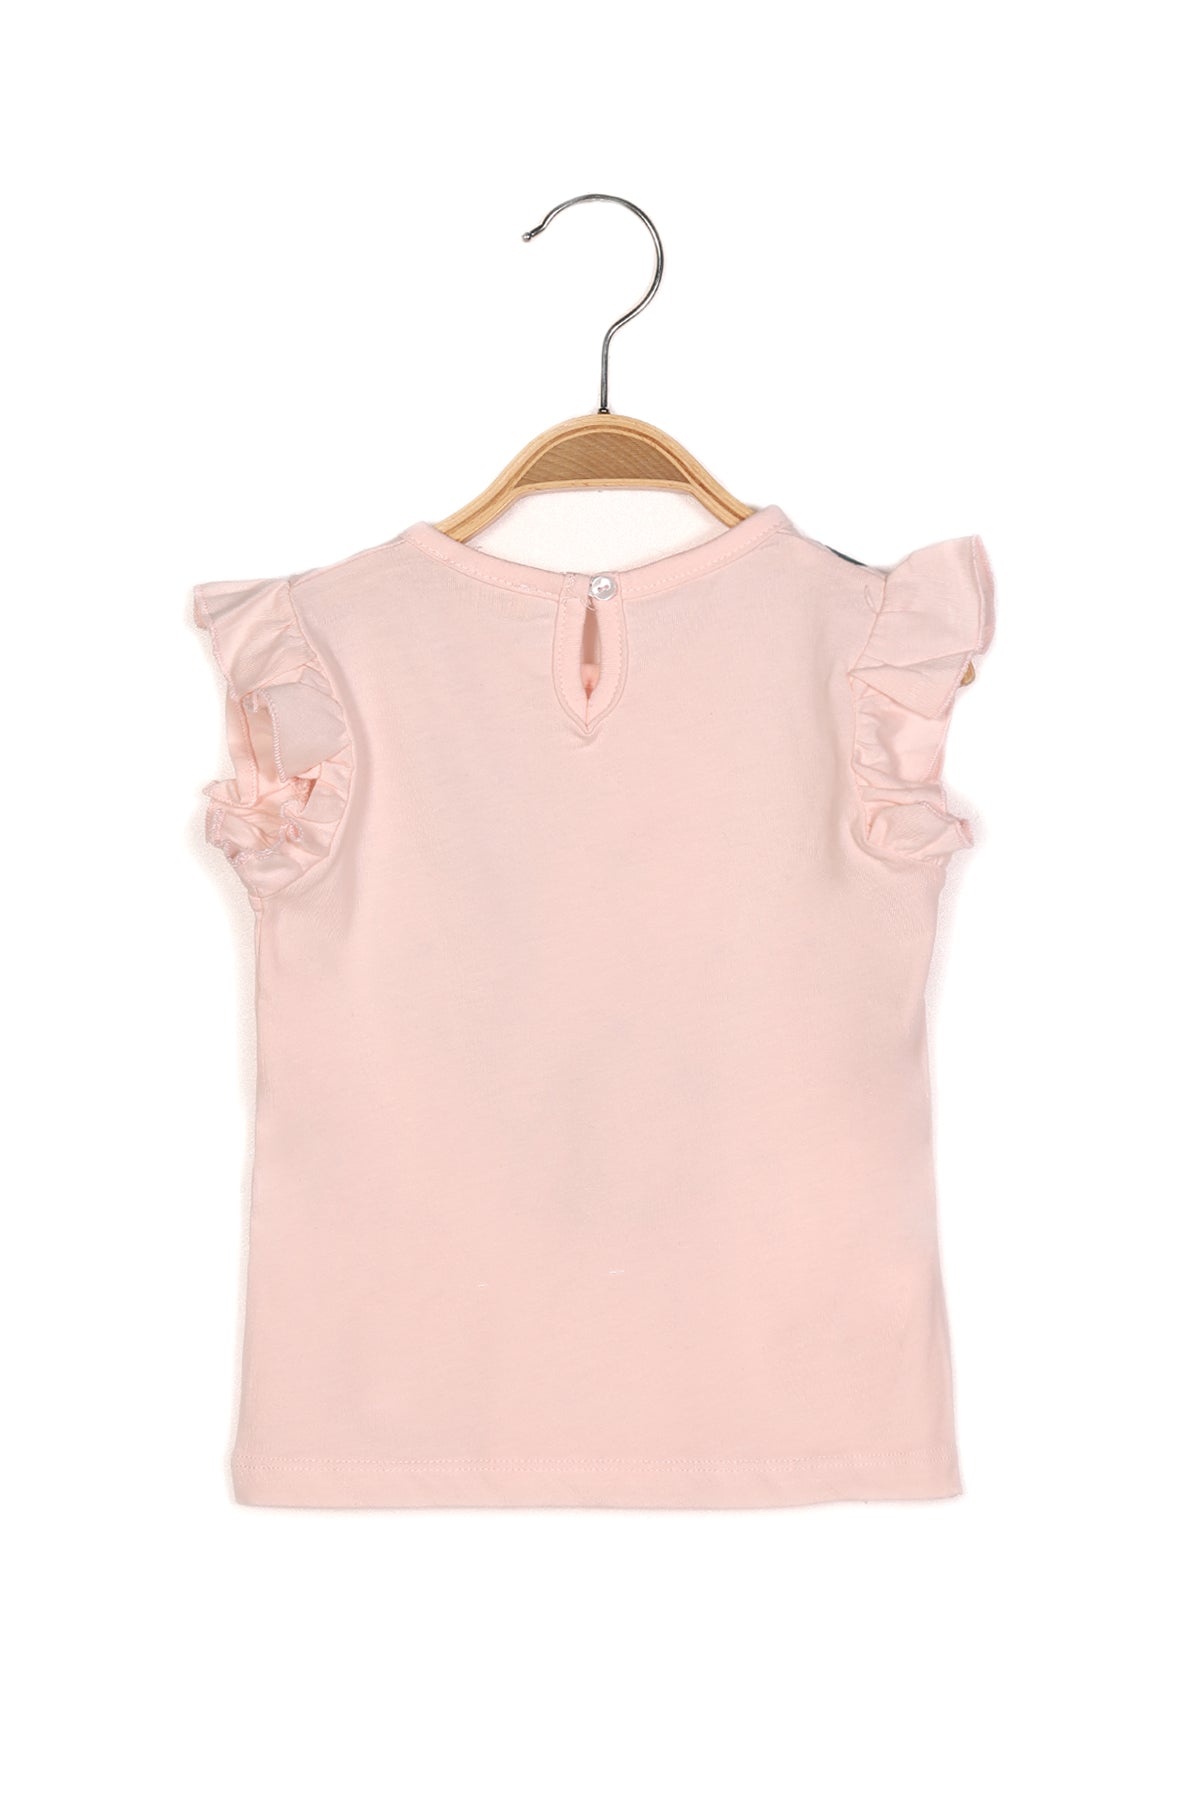 Kız Bebek Deniz Kabuğu Baskılı Kolları Fırfırlı T-shirt-2